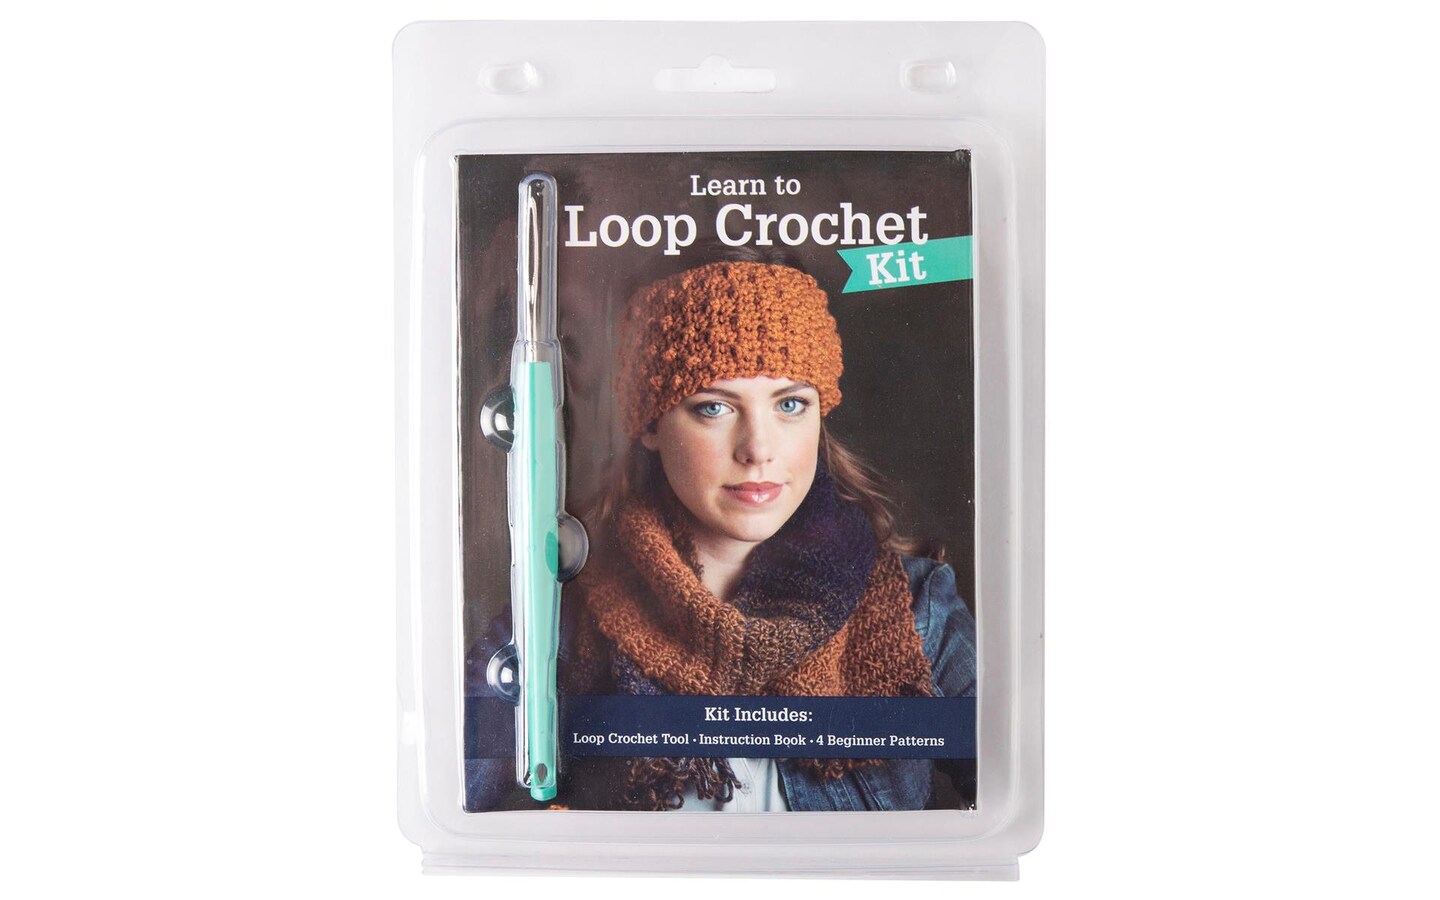 Beginner's Guide to Crochet - Supplies Needed for Crochet